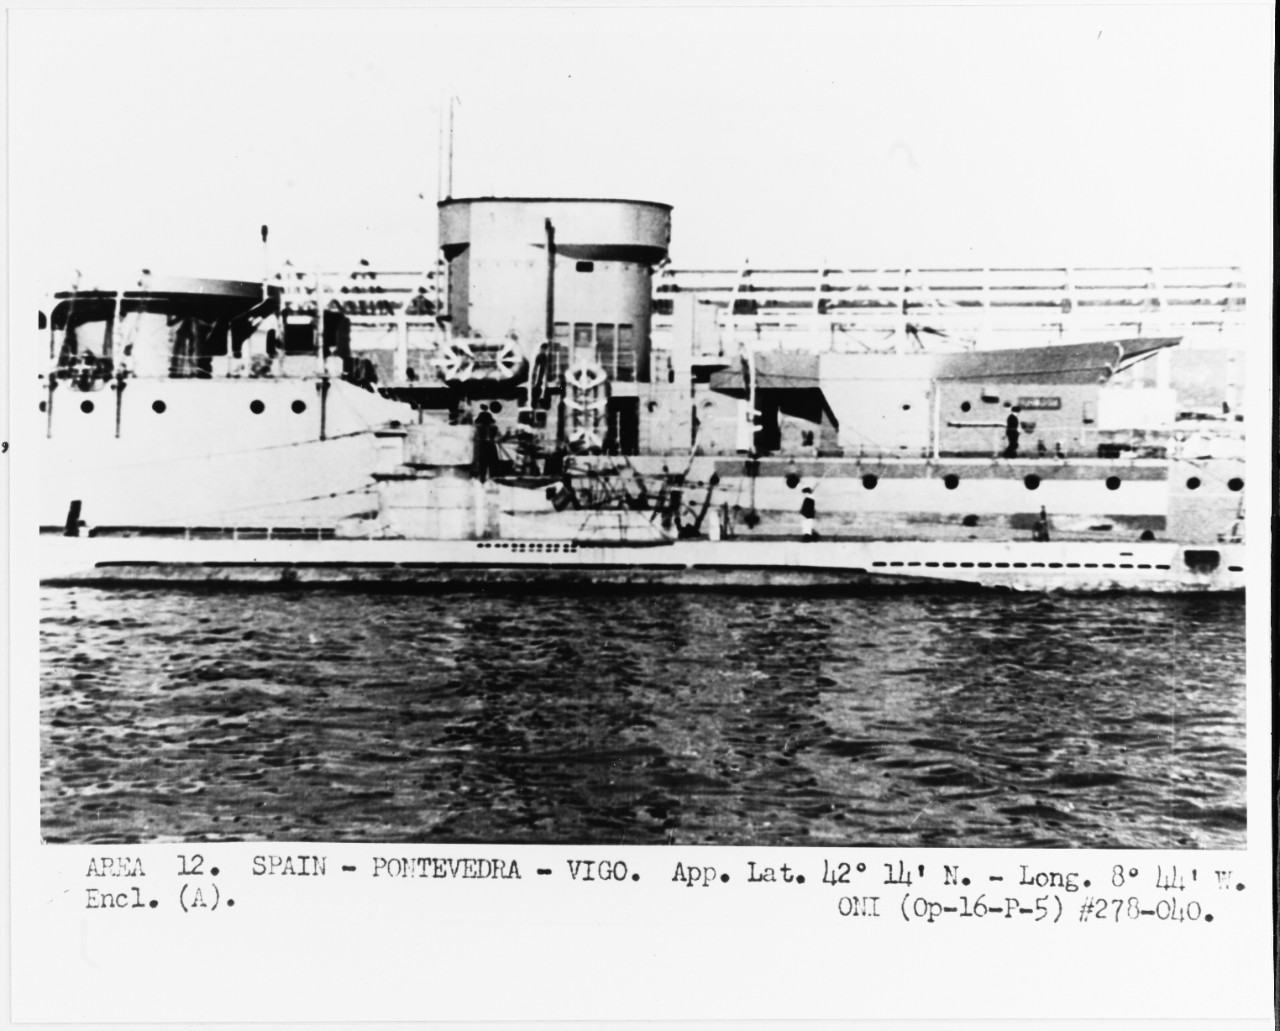 NAVARRA (Spanish cruiser, 1920-1956)